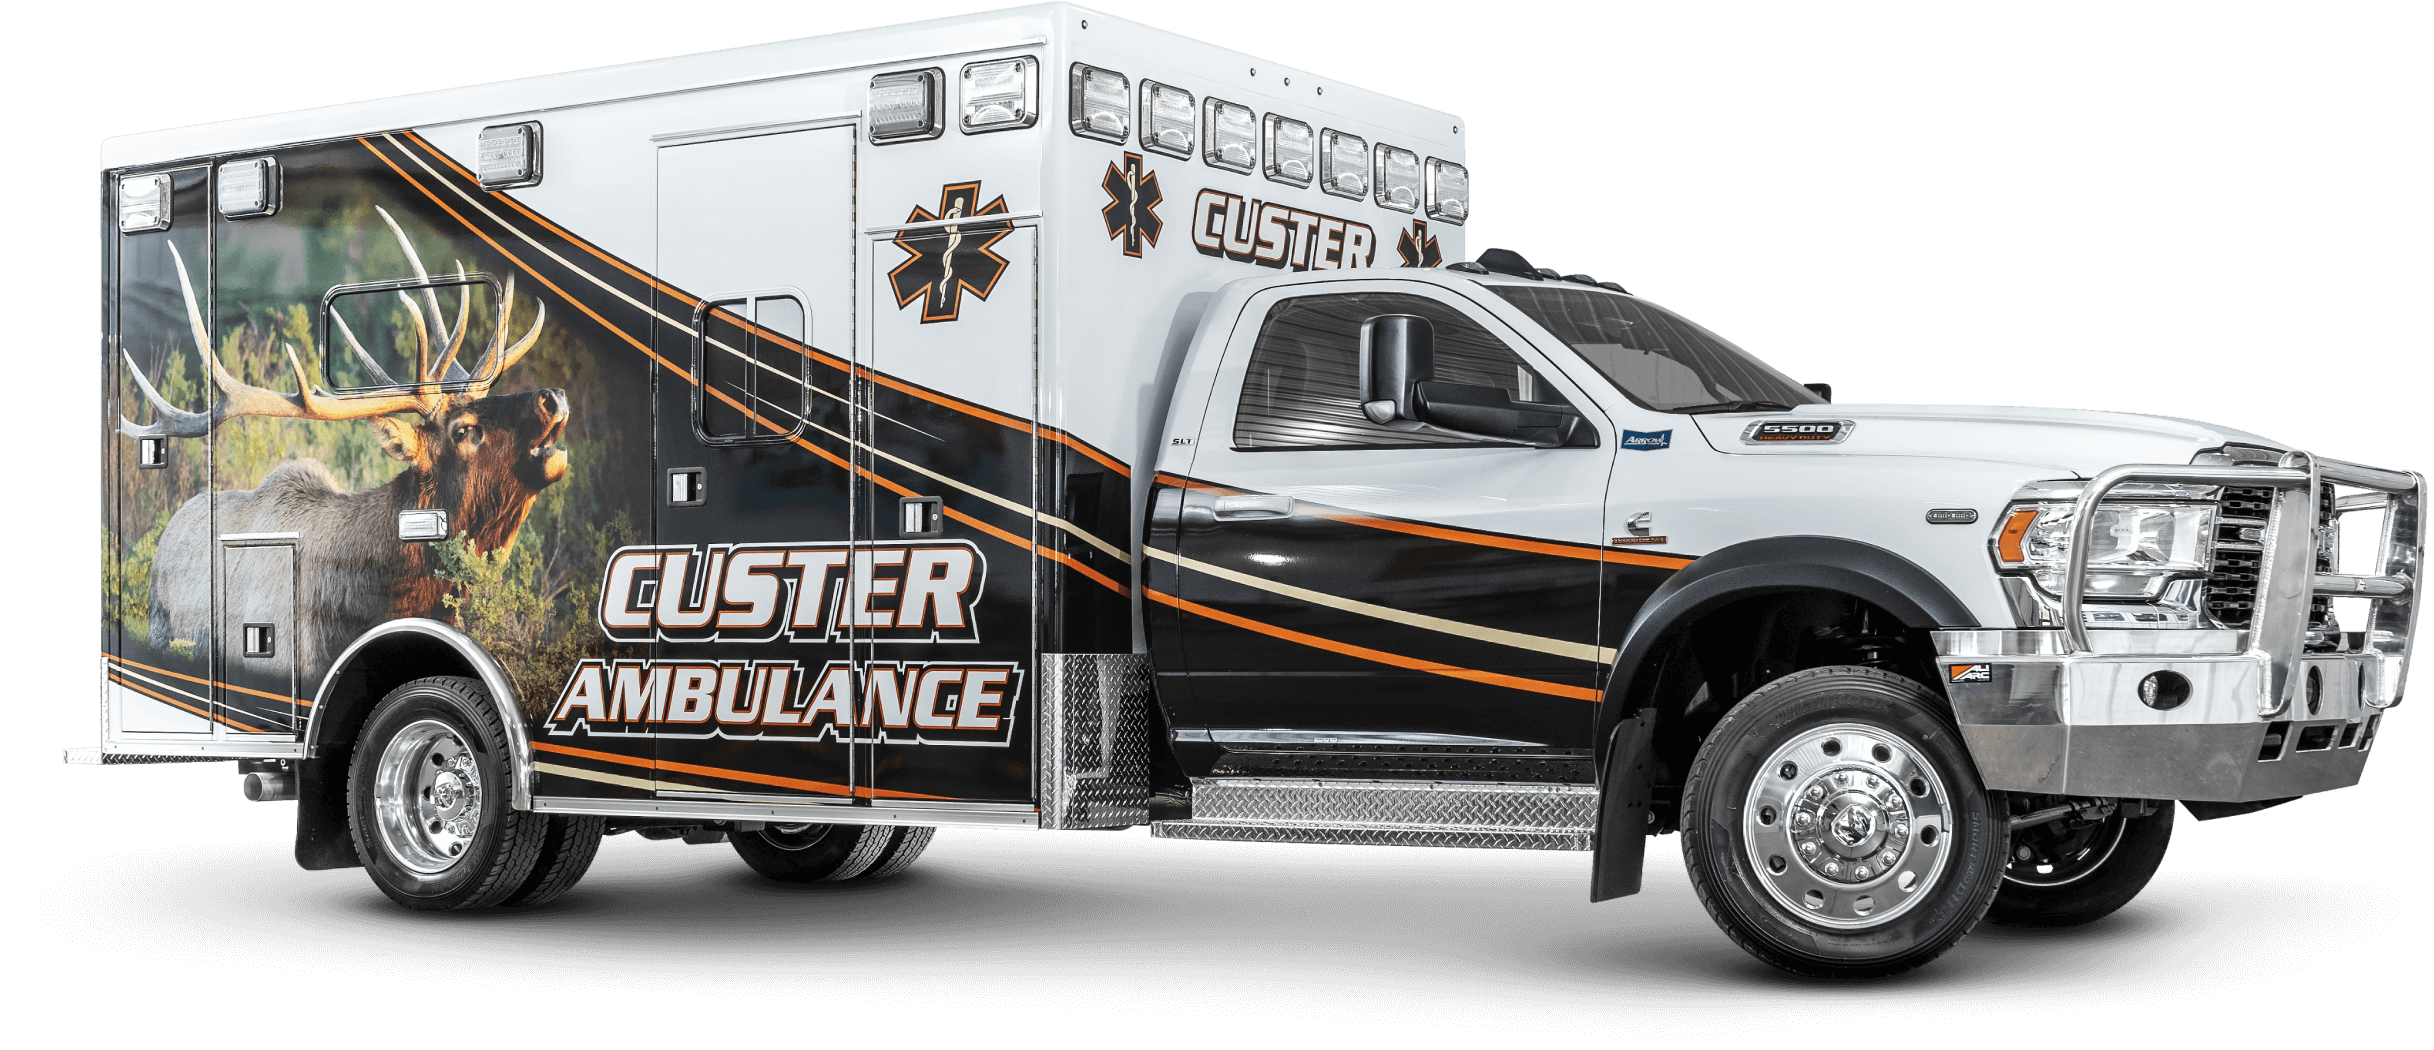 Custer Ambulance Service Ram 5500 Heavy Duty Ambulance